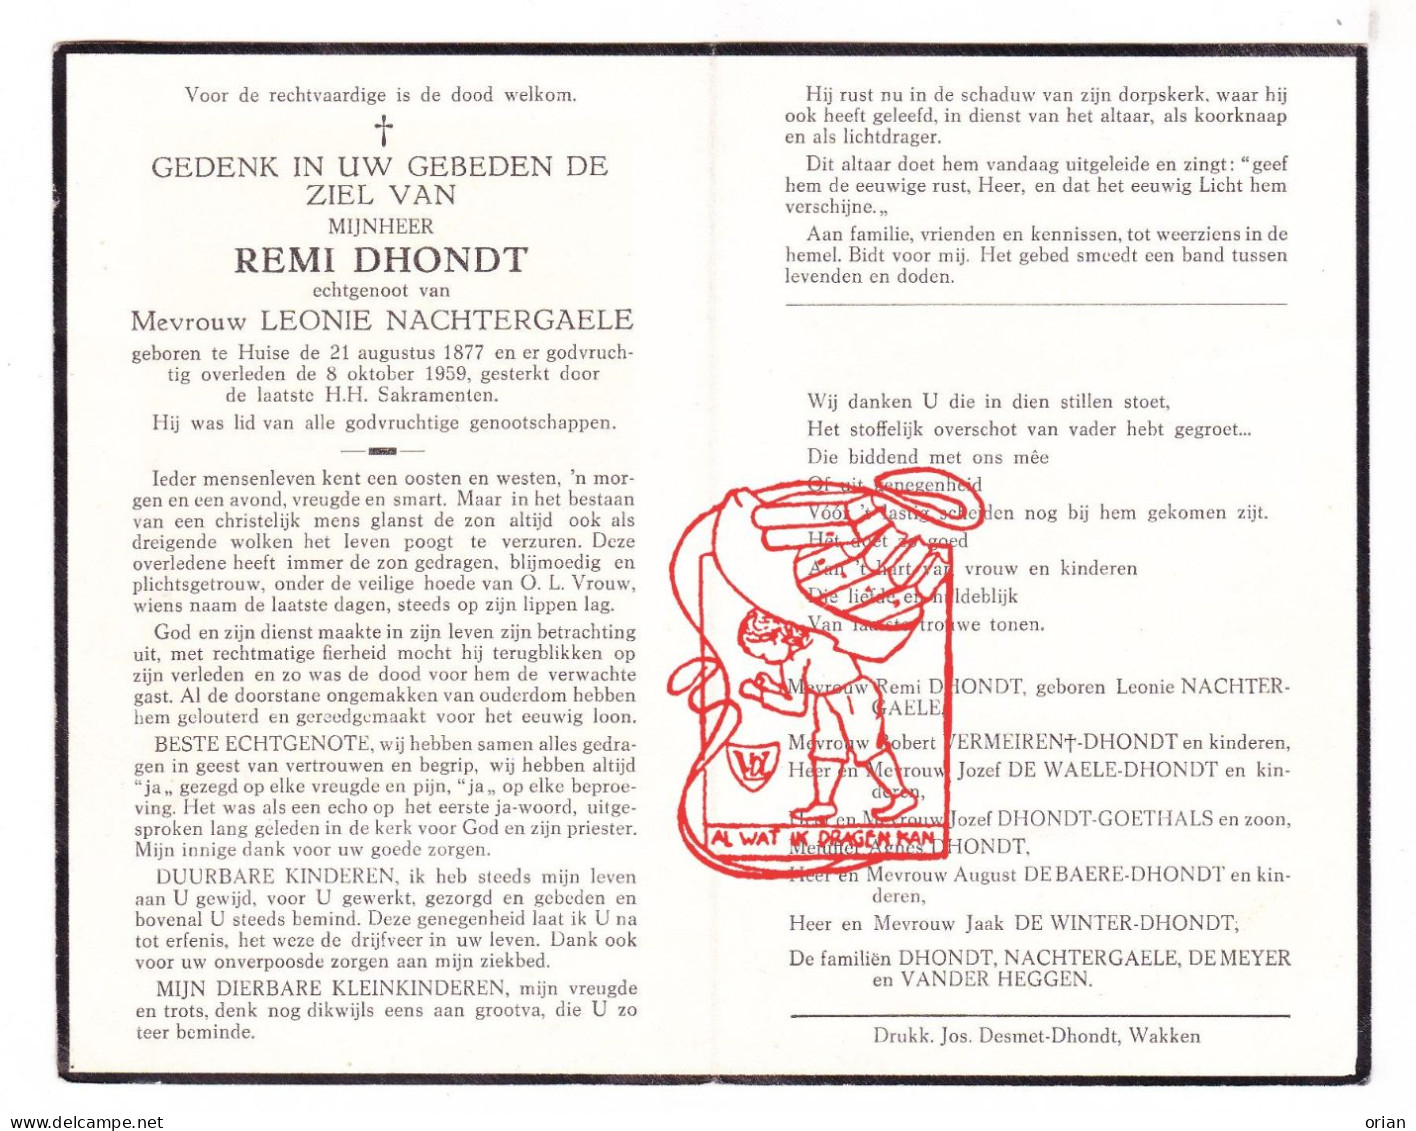 DP Remi Dhondt ° Huise Zingem 1877 † 1959 Nachtergaele Vermeiren De Waele Goethals De Baere Winter Vander Heggen Meyer - Santini